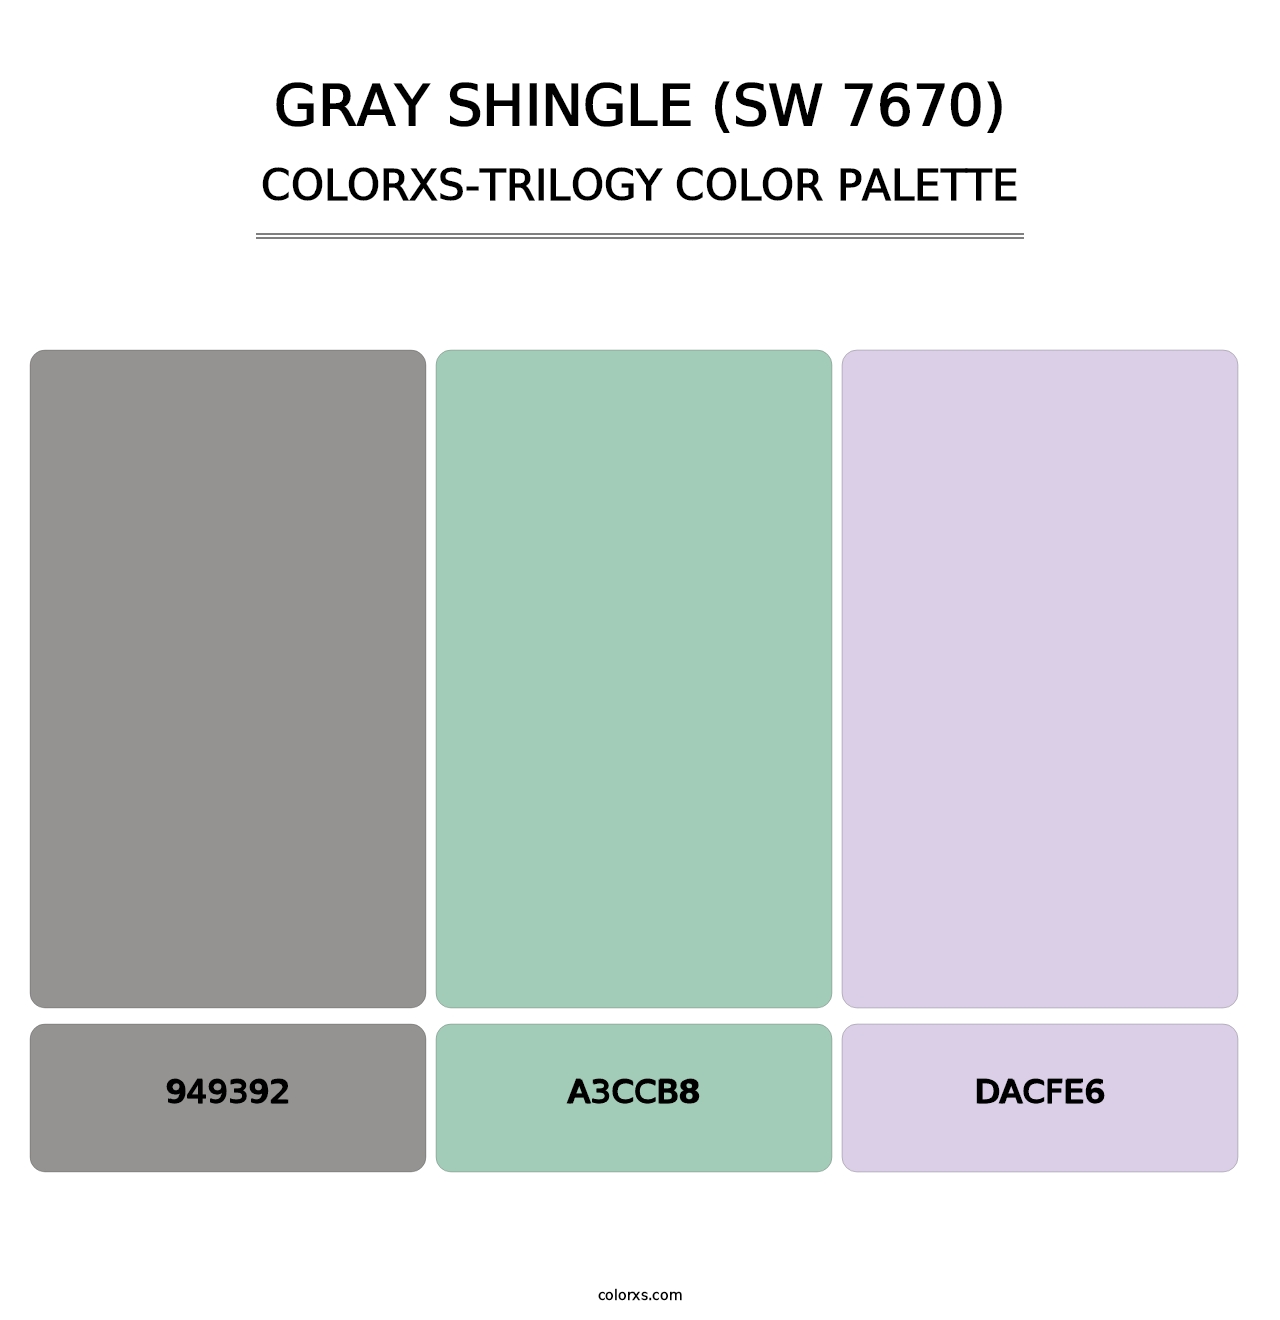 Gray Shingle (SW 7670) - Colorxs Trilogy Palette